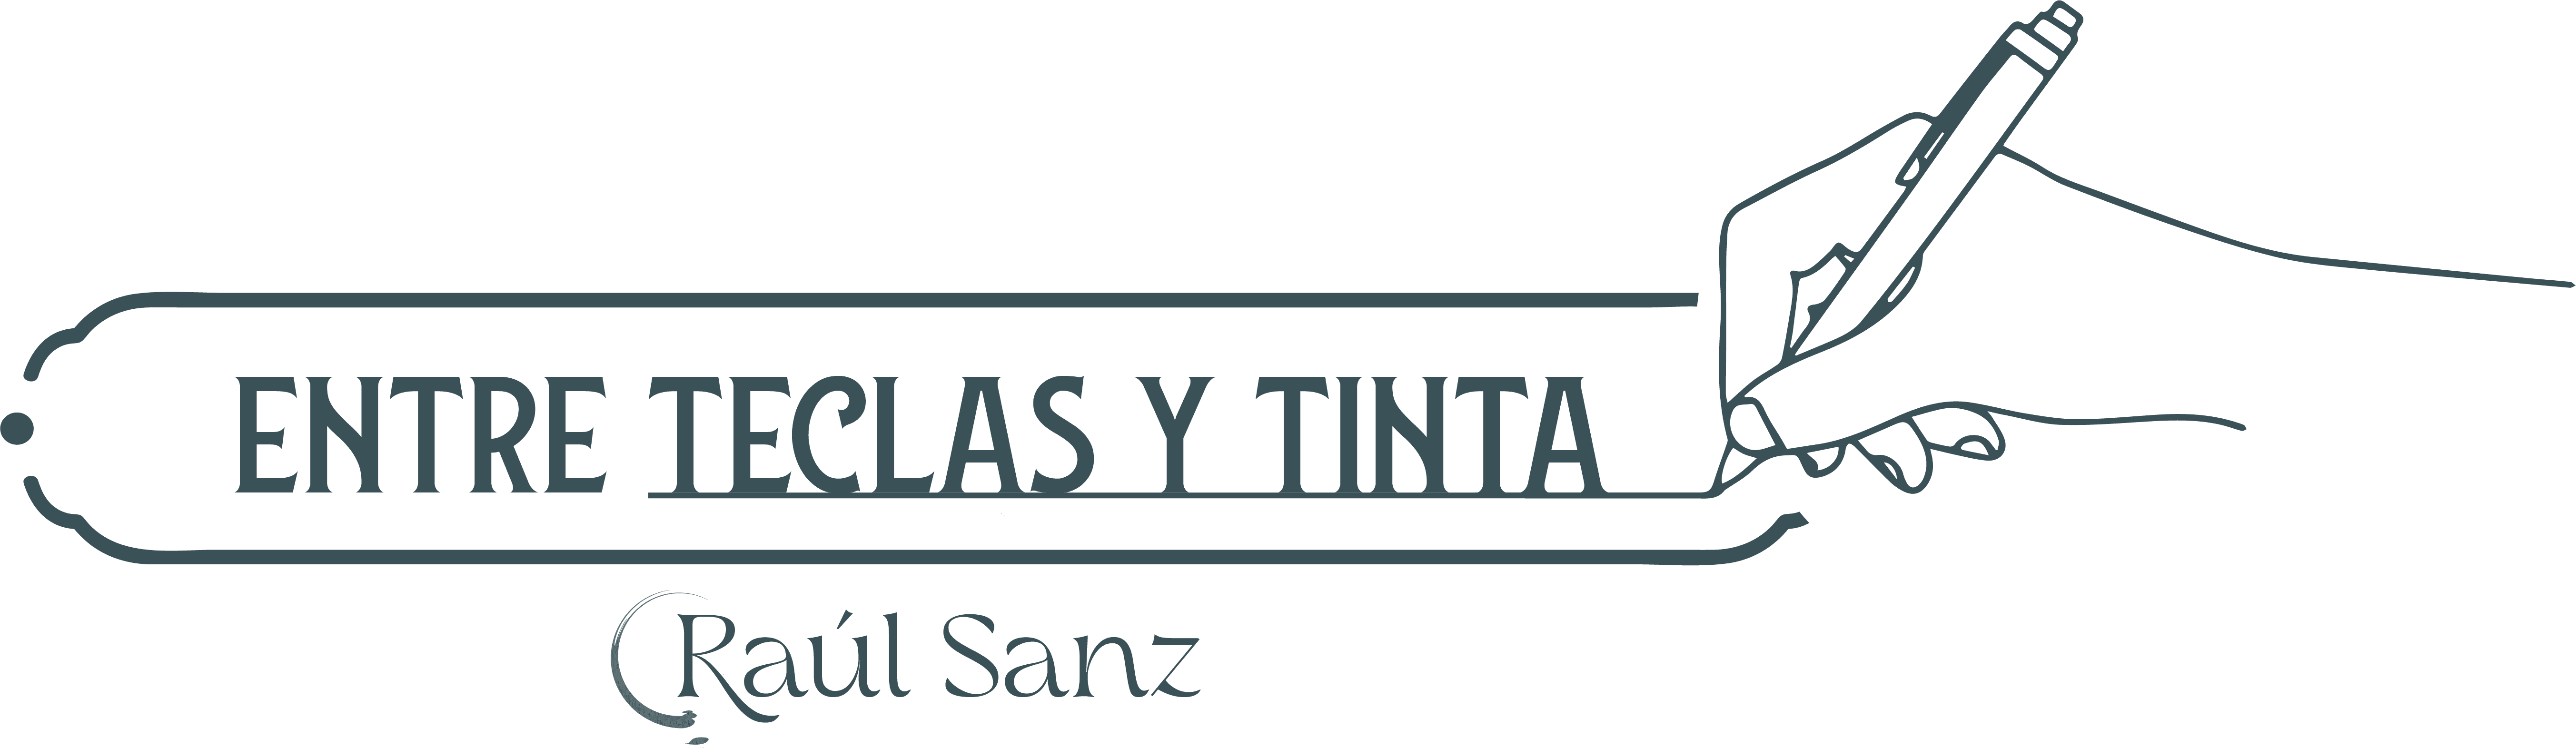 Logotipo Raúl Sanz entre teclas y tinta